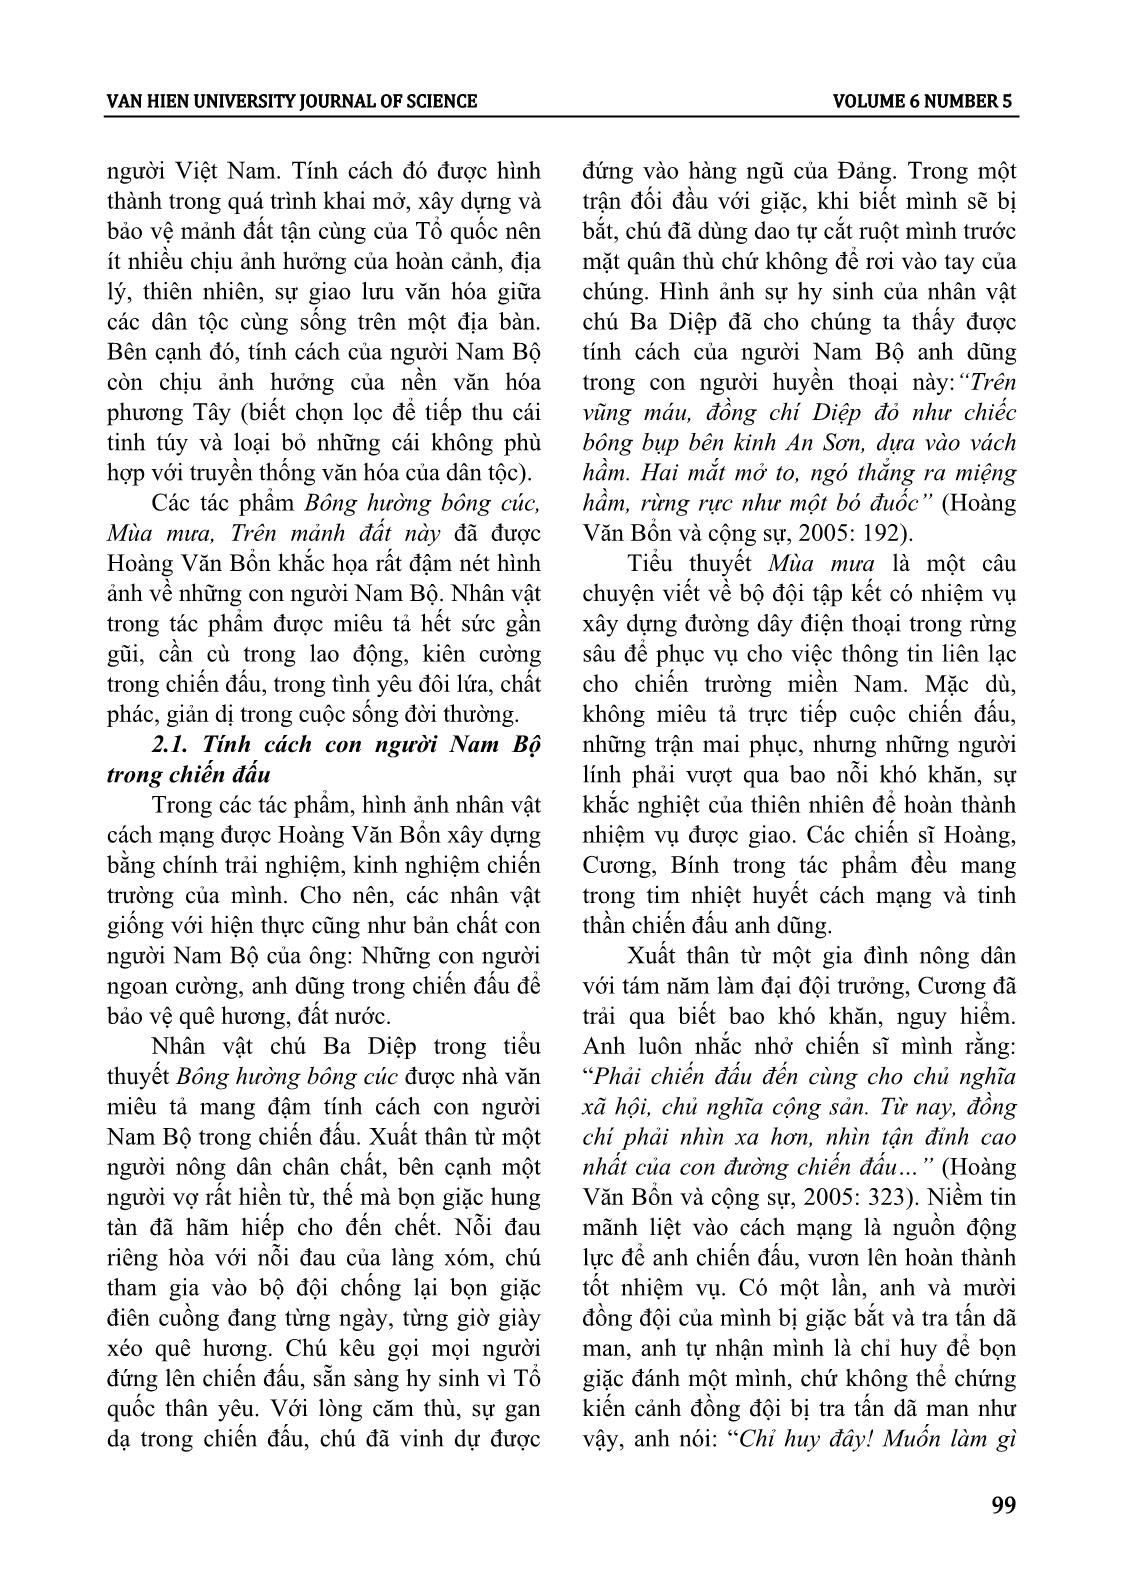 Tính cách con người nam bộ trong tiểu thuyết Hoàng Văn Bổn giai đoạn 1955 - 1975 trang 3